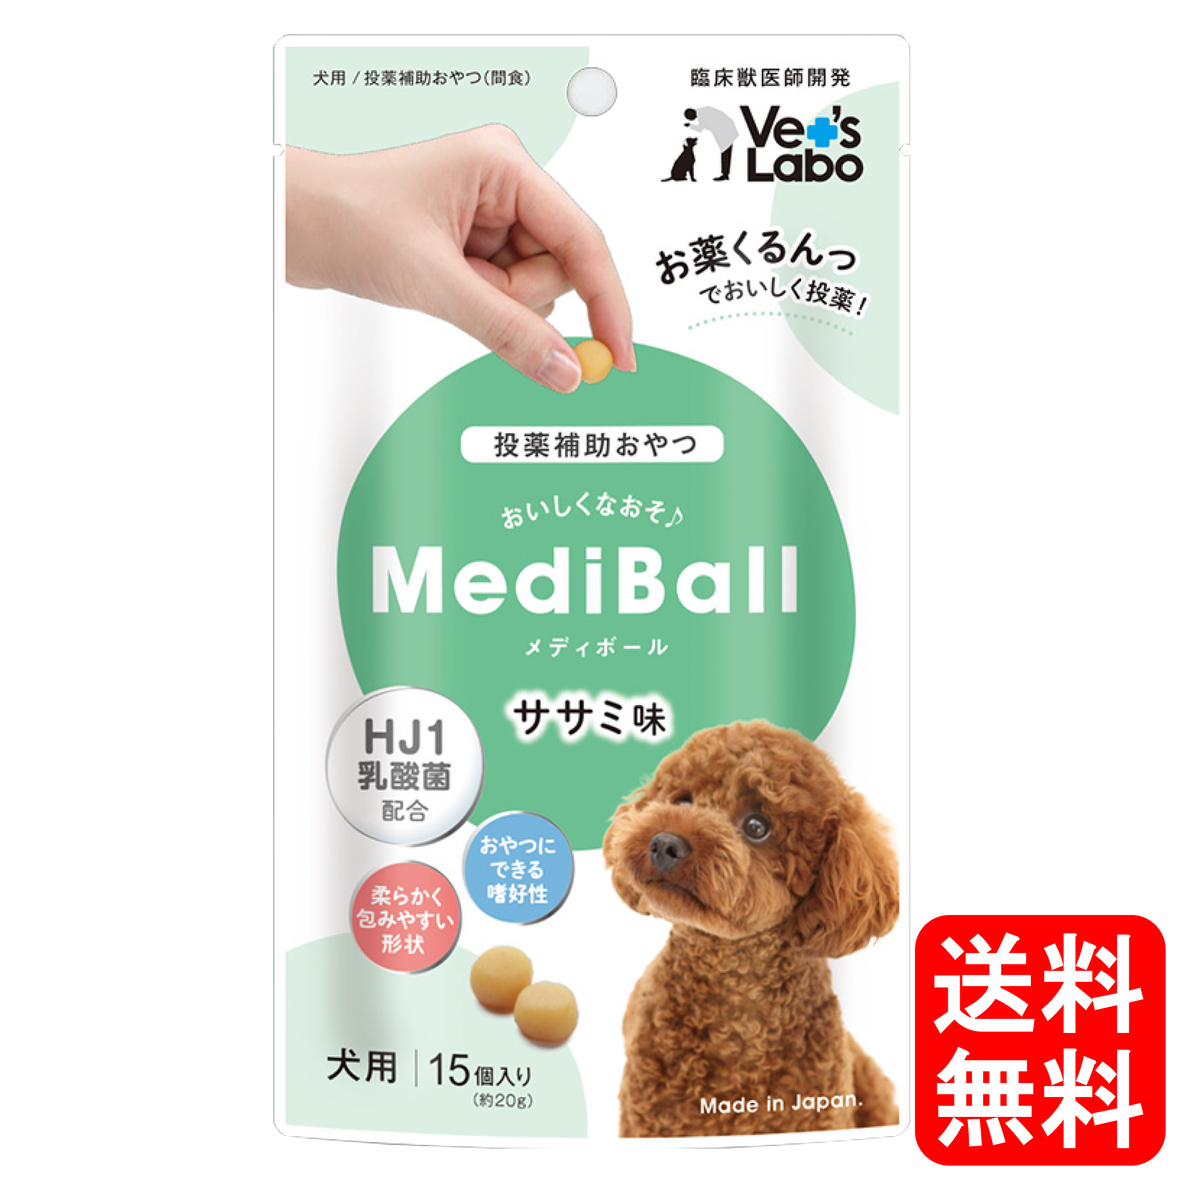  送料無料 MediBall メディボール 犬用 ささみ味 15個入り  投薬補助用おやつ